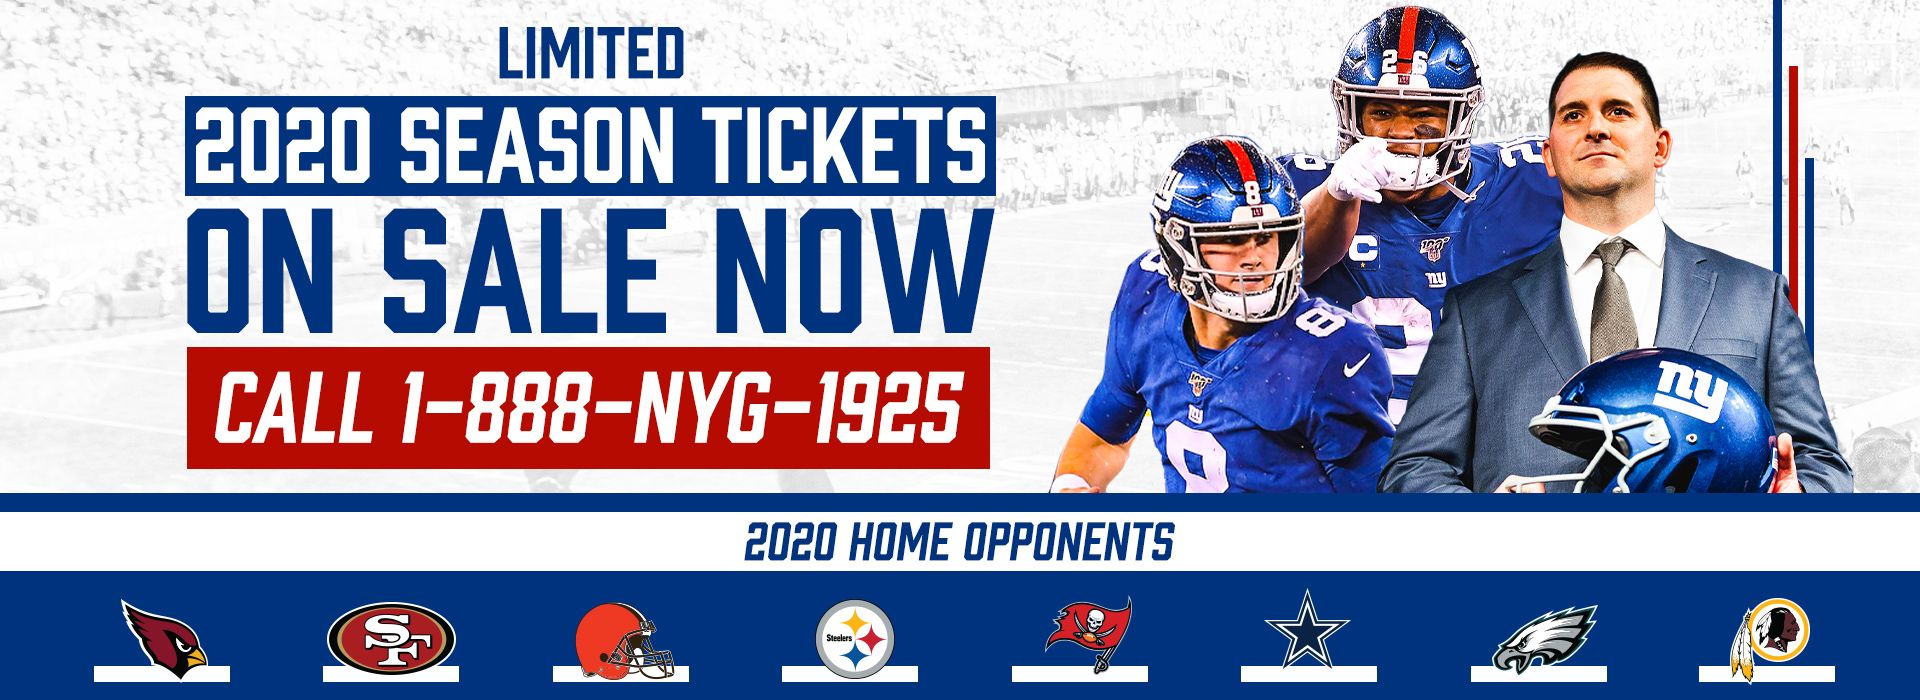 Giants Tickets New York Giants